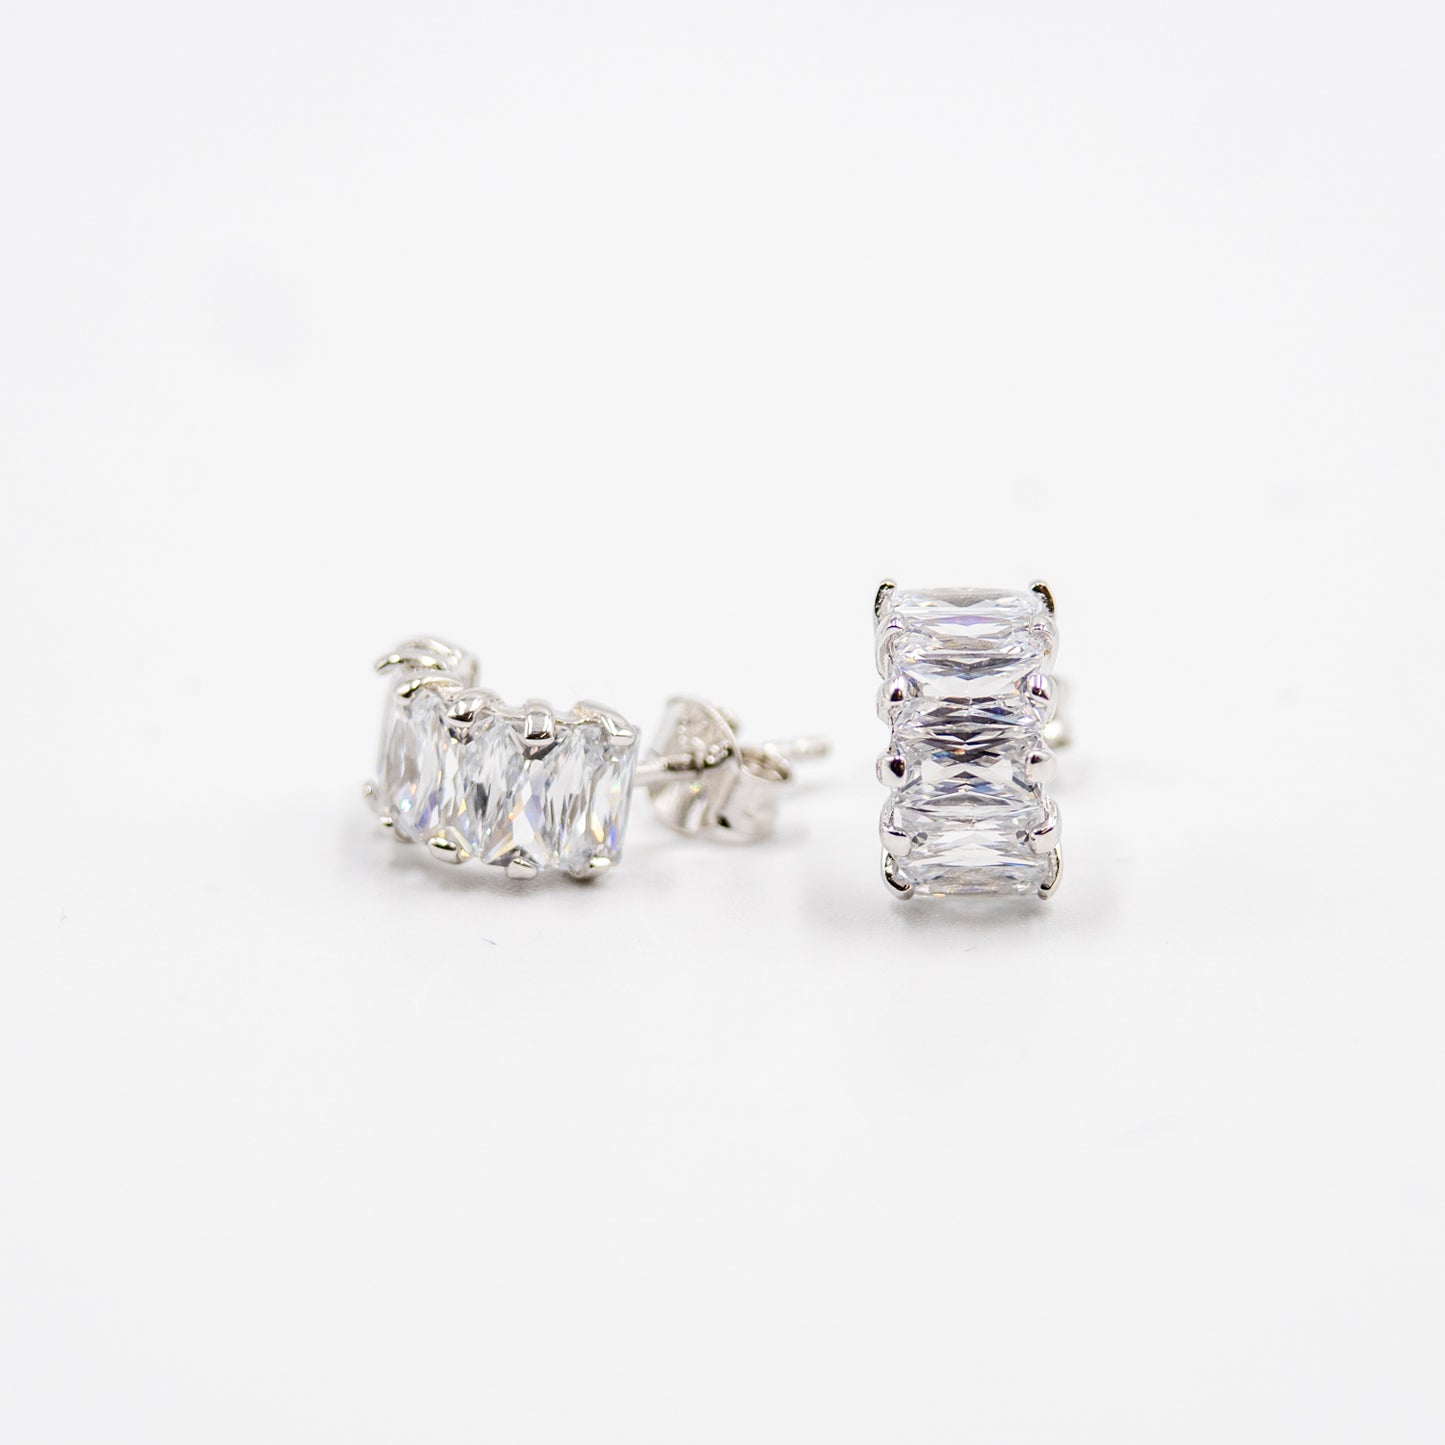 DK-925-202 sterling silver earrings